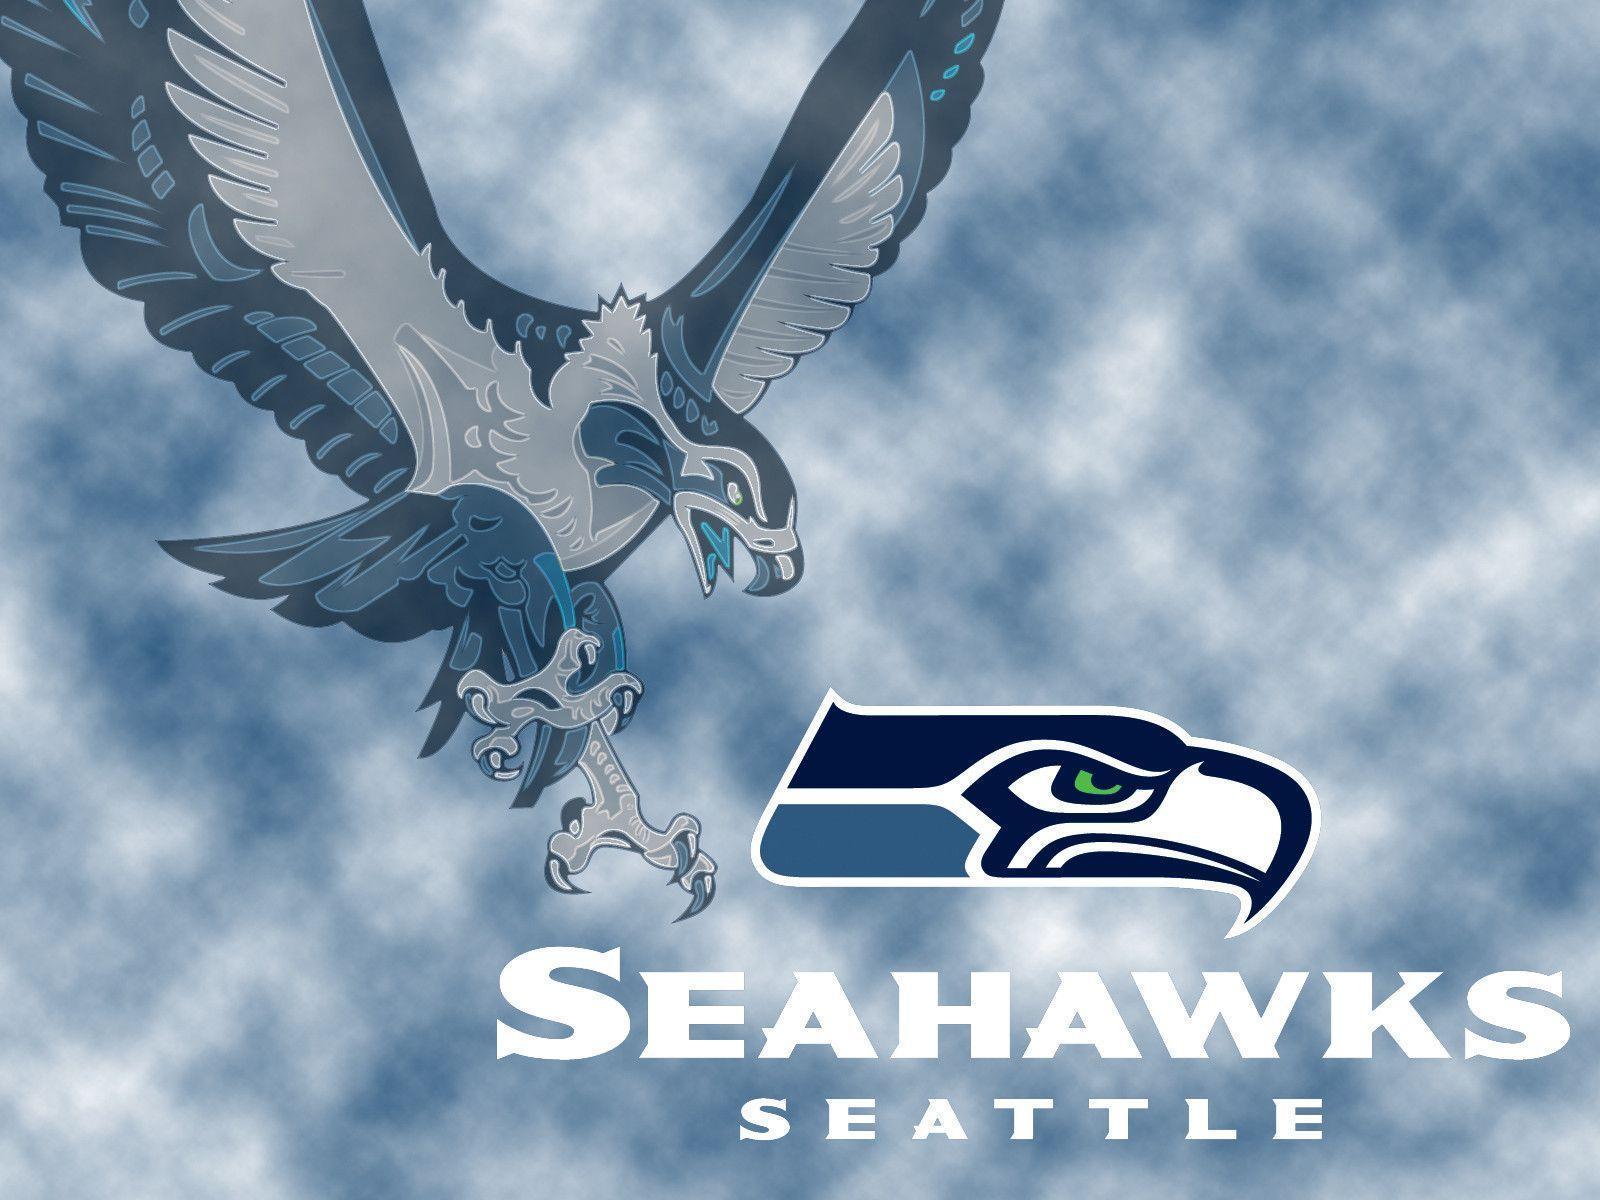 Seattle Seahawks Wallpaper. HD Wallpaper Early